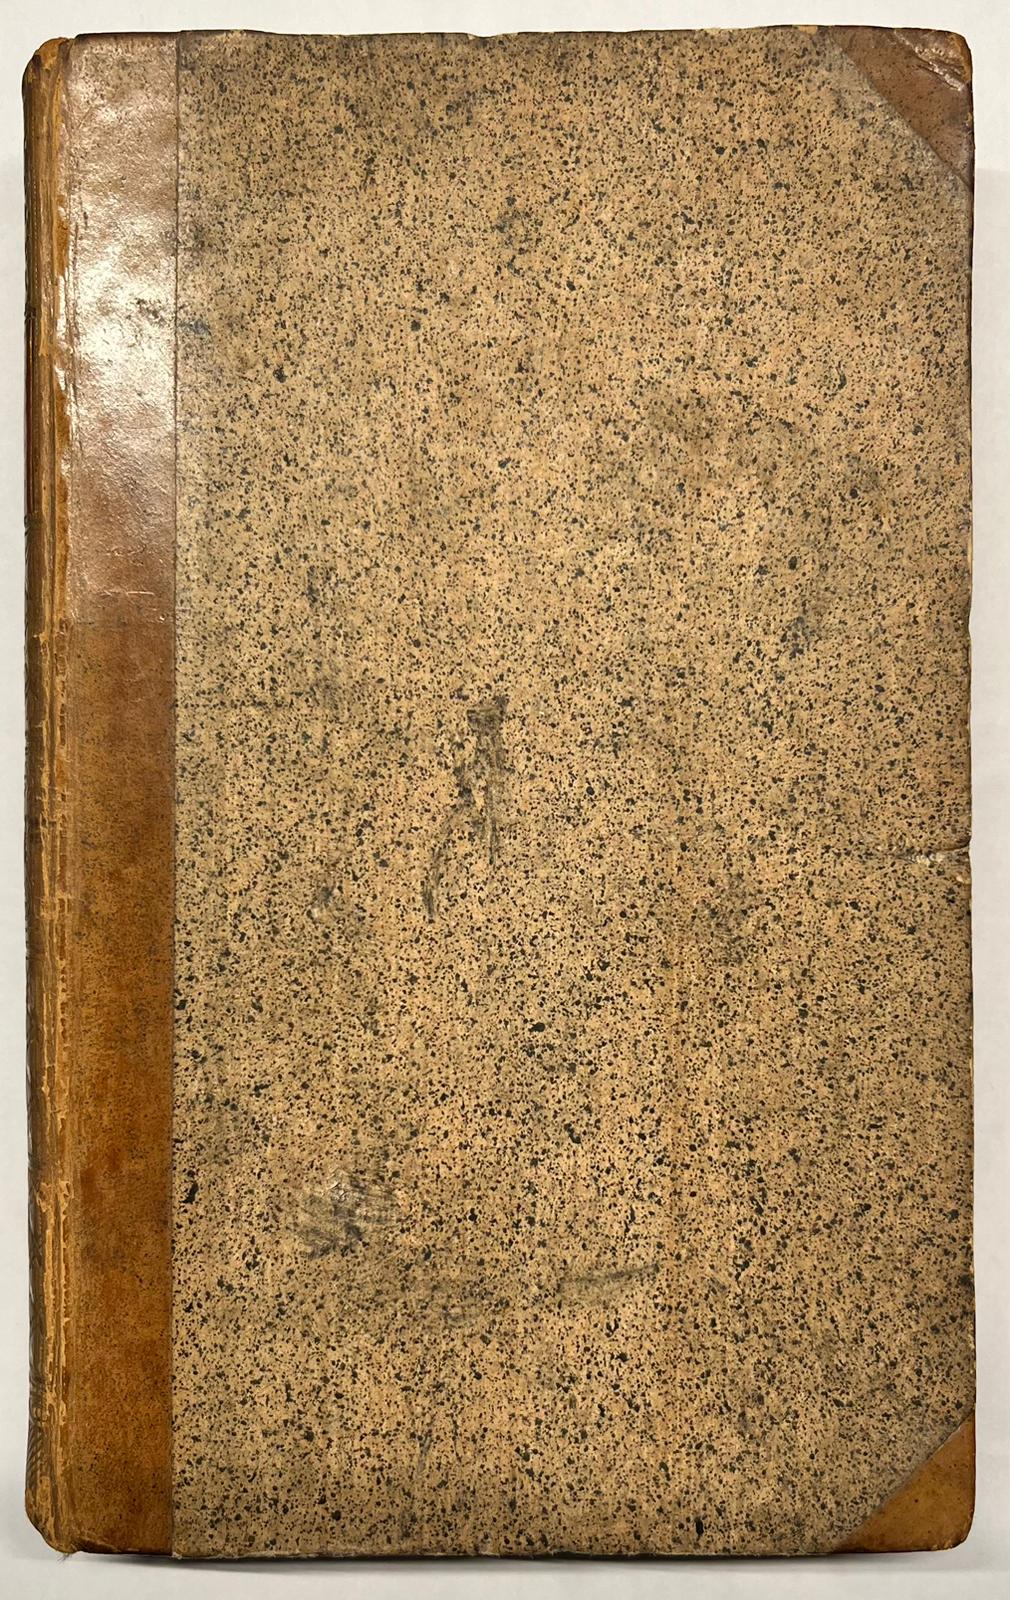 [Periodical, 1758-1760, 2 volumes] De Borger. Utrecht: Wed. J. van Schoonhoven, 1758-1760, 2 vols., VIII, 393; VIII, 405, (1) pp.